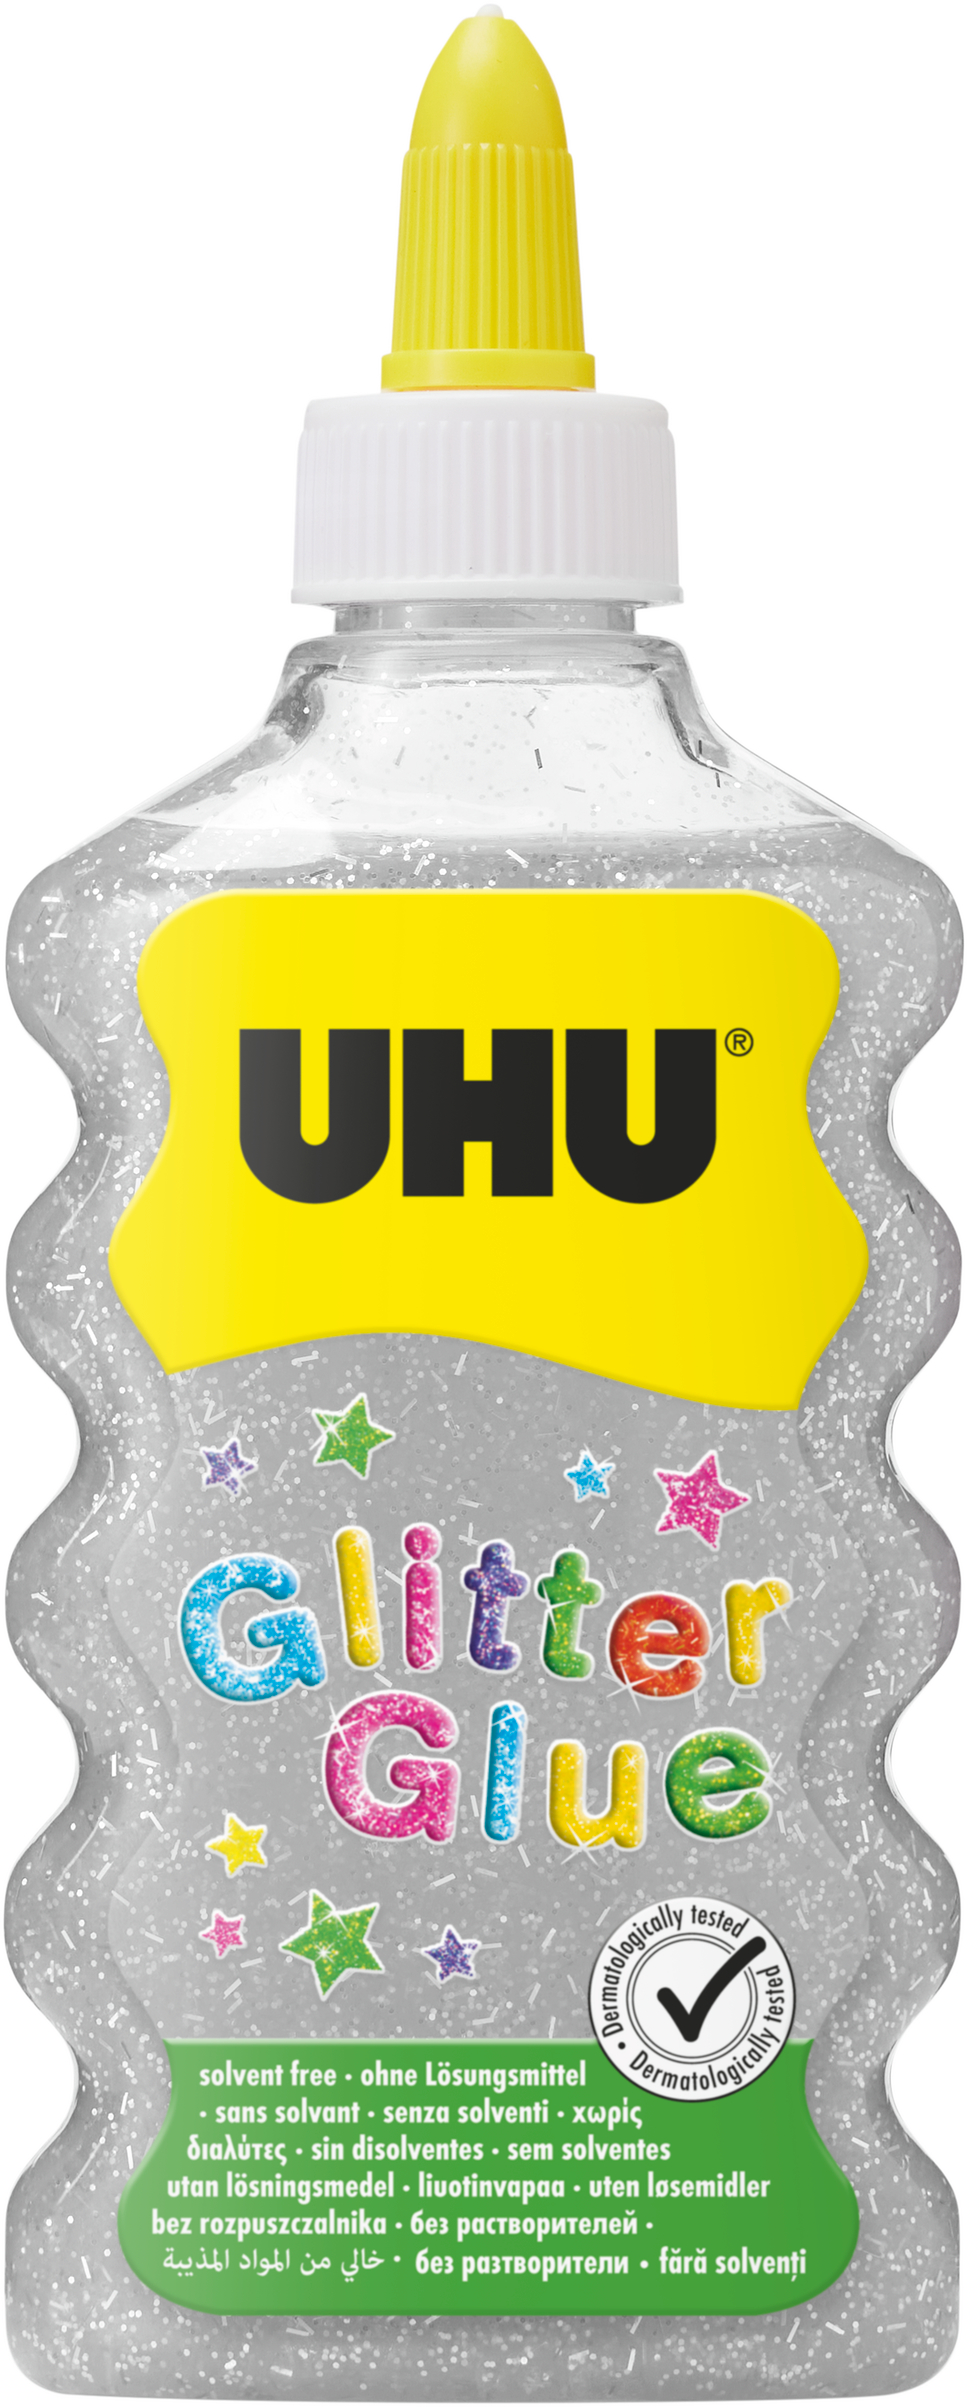 UHU Glitter Glue Maxi 510572 argent, 185g